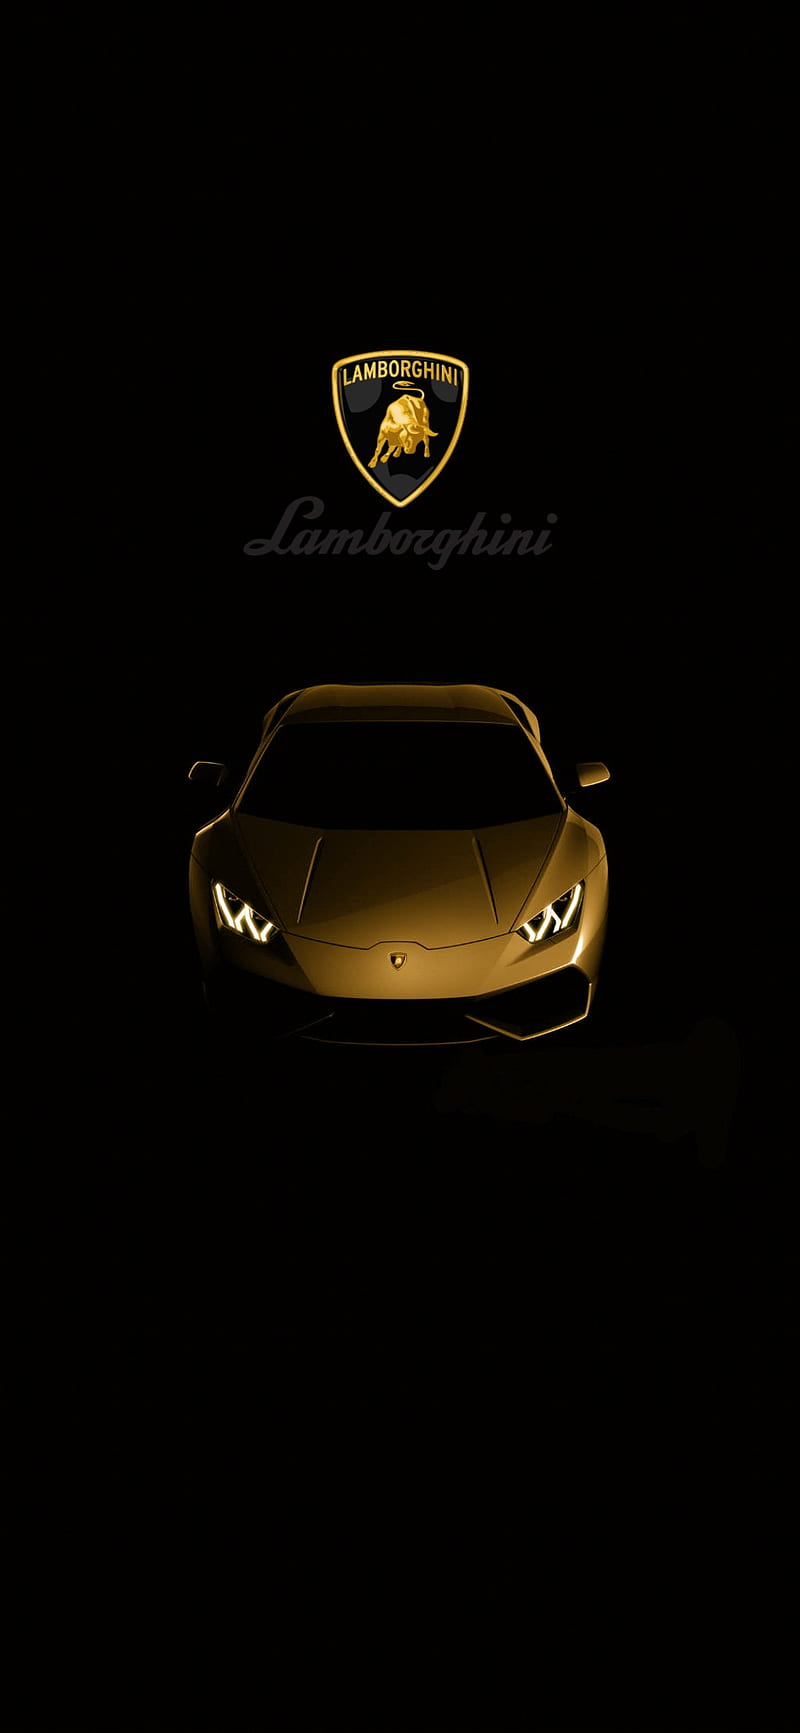 Lamborghini gold, car, logo, HD phone wallpaper